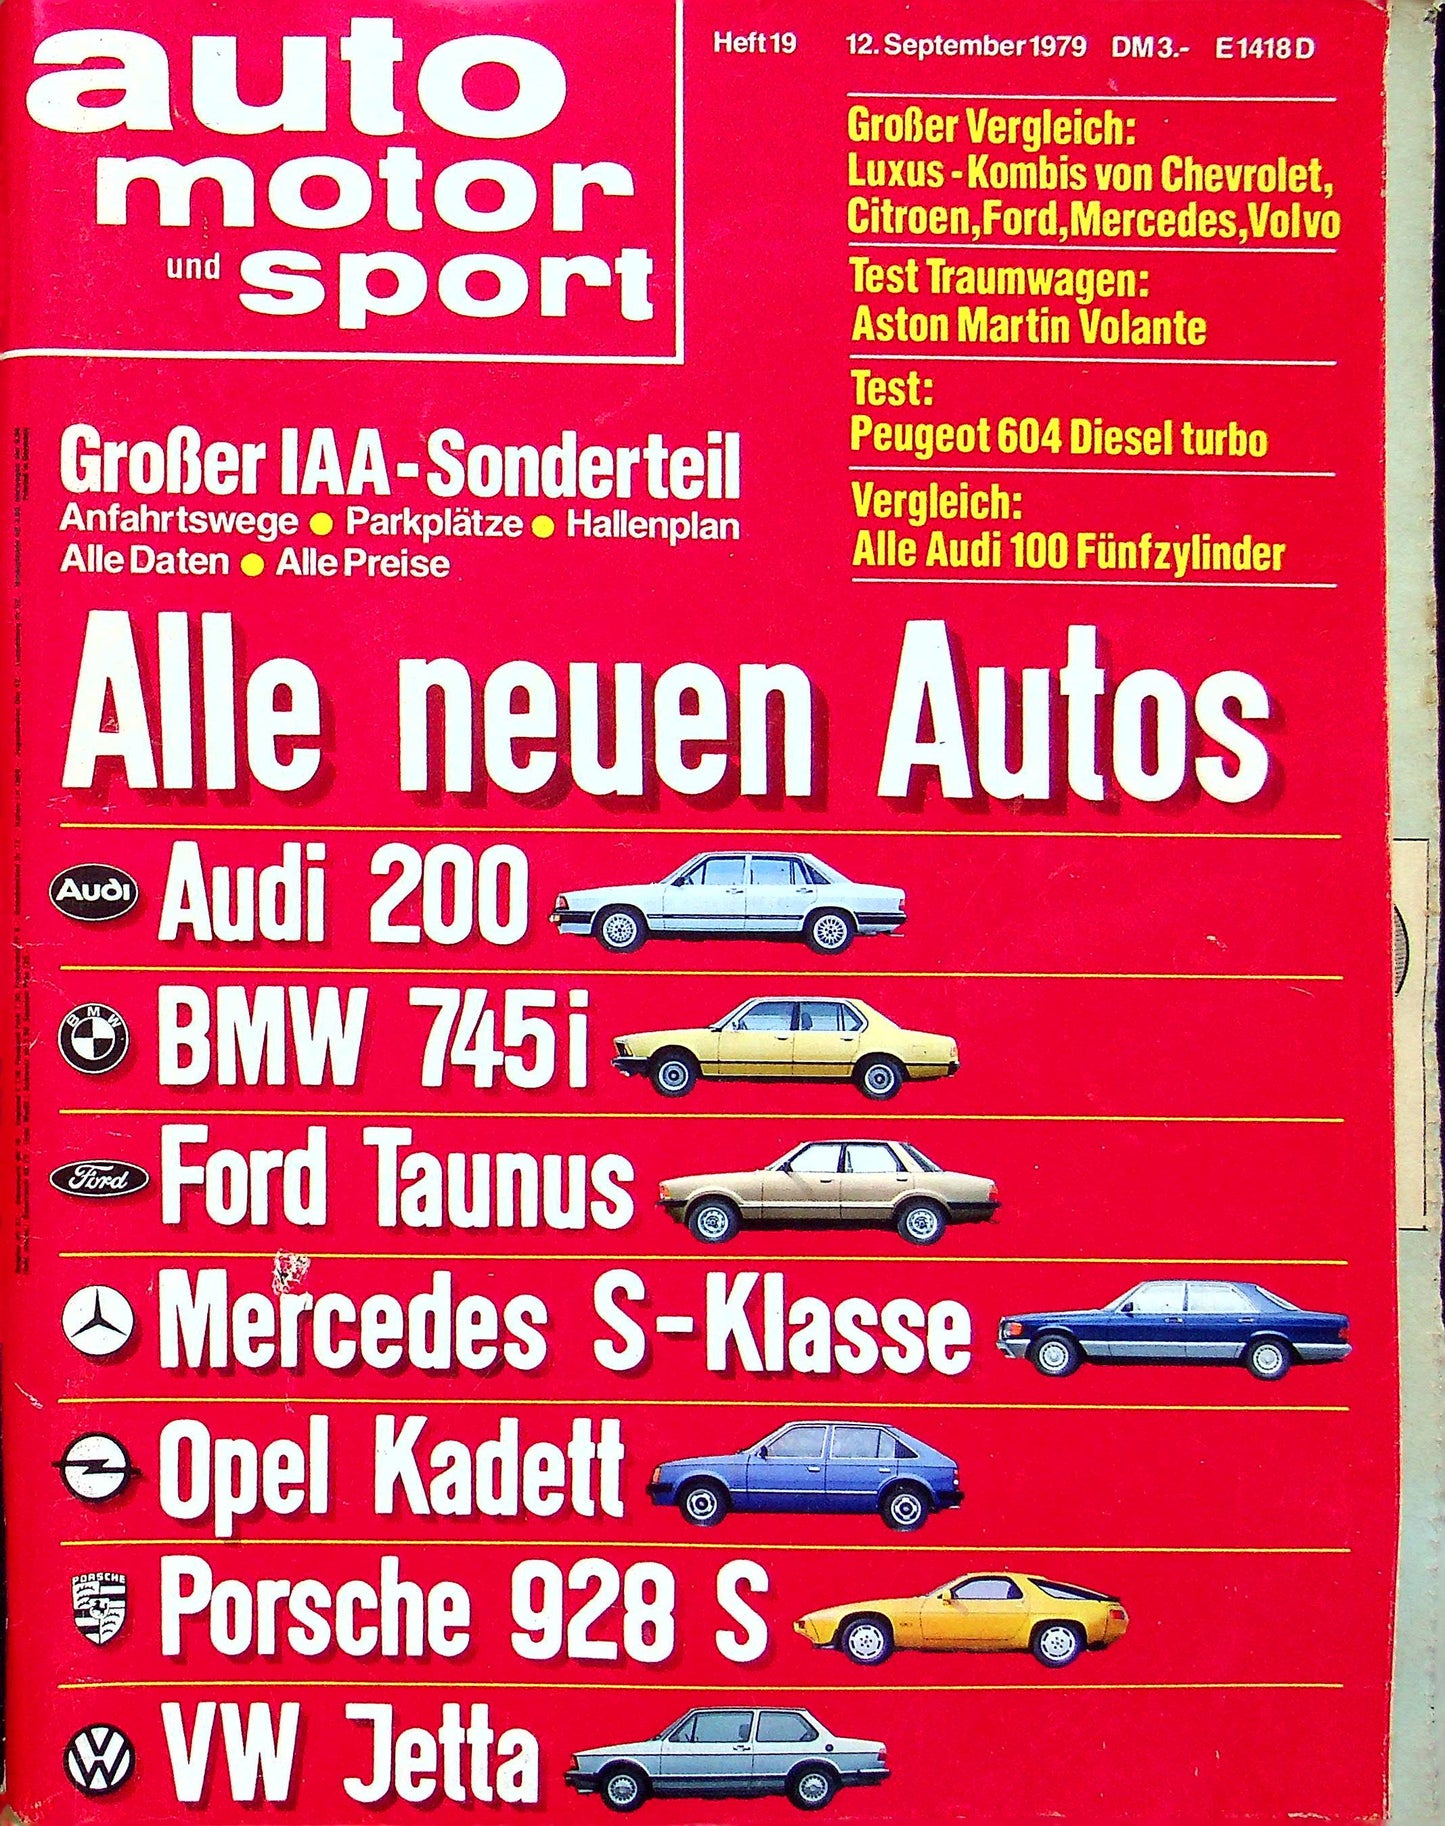 Auto Motor und Sport 19/1979